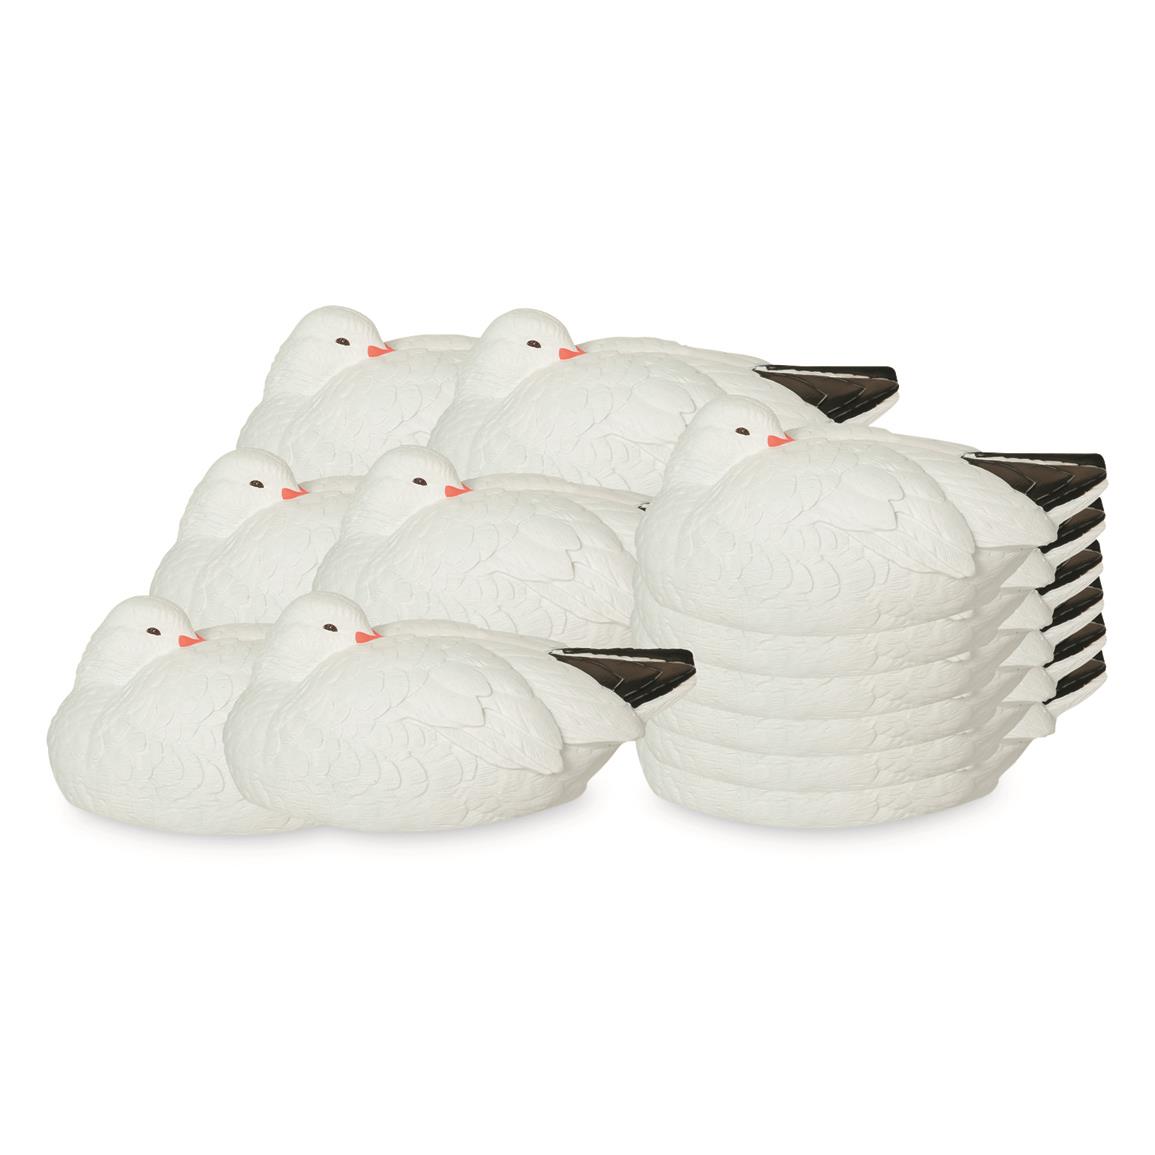 Avery GHG Pro-Grade Snow Goose Shells, Sleeper 12 Pack